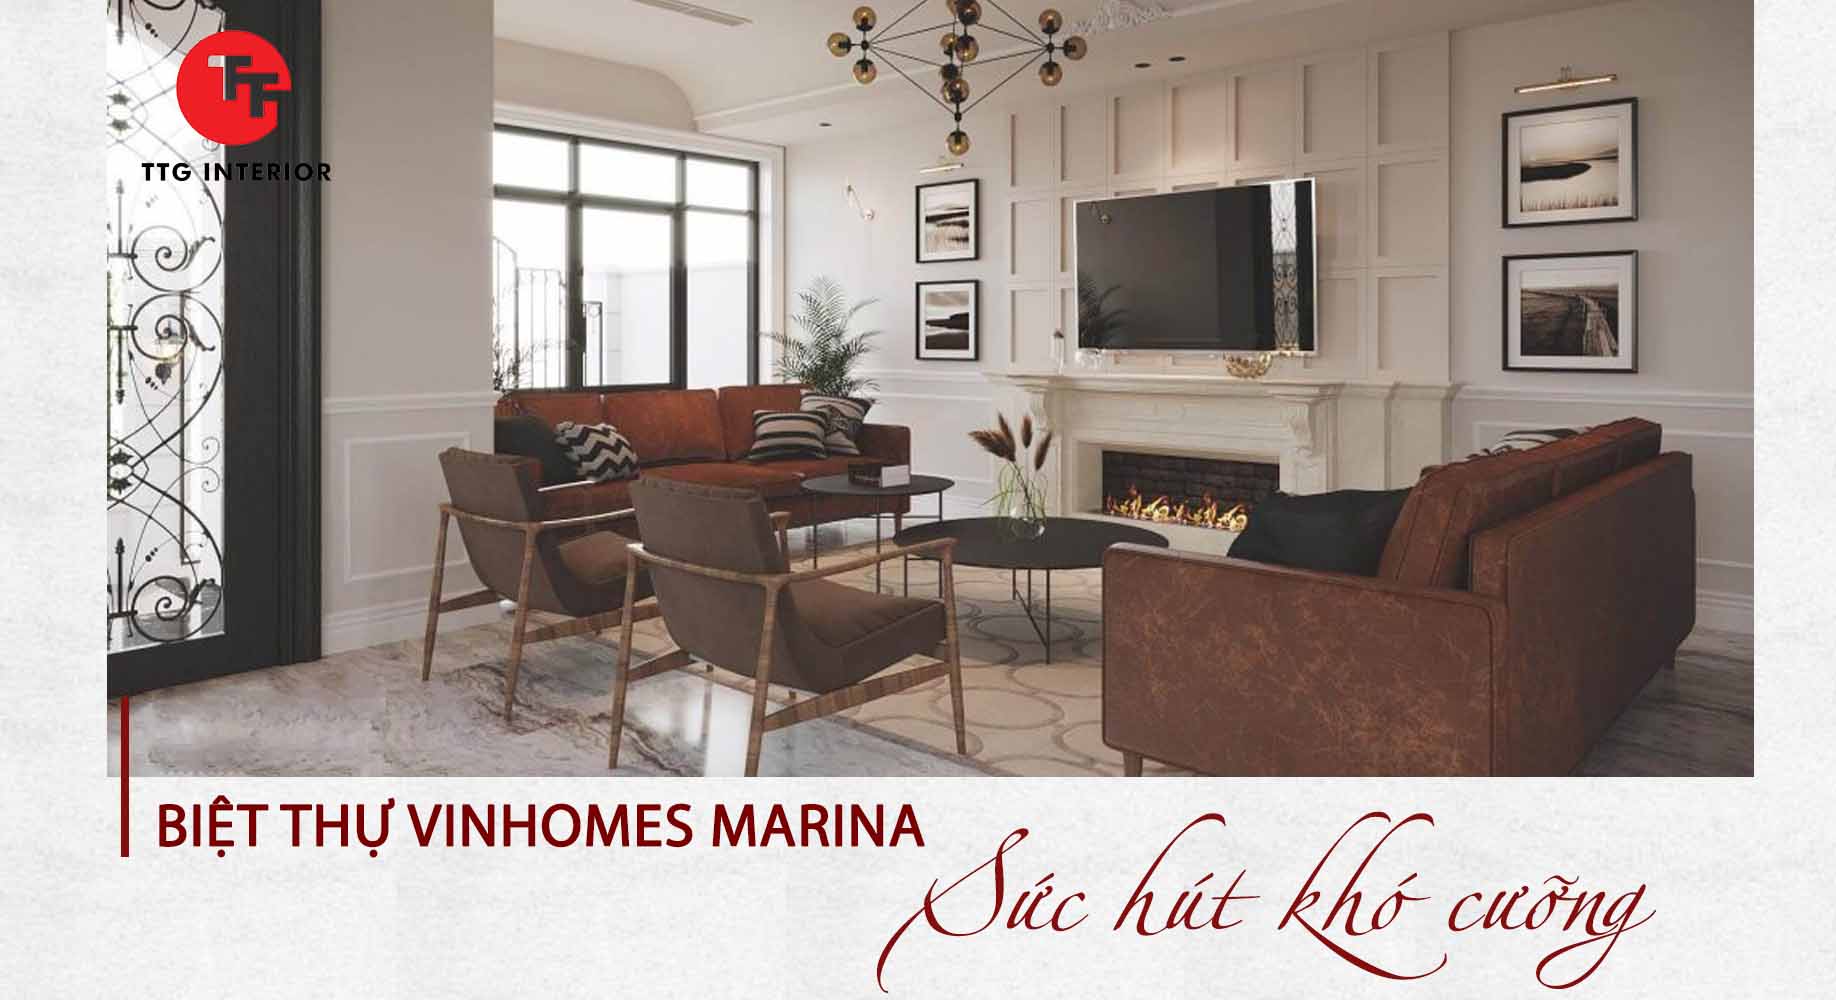 Sức hút khó cưỡng của phong cách thiết kế nội thất biệt thự Vinhomes Marina